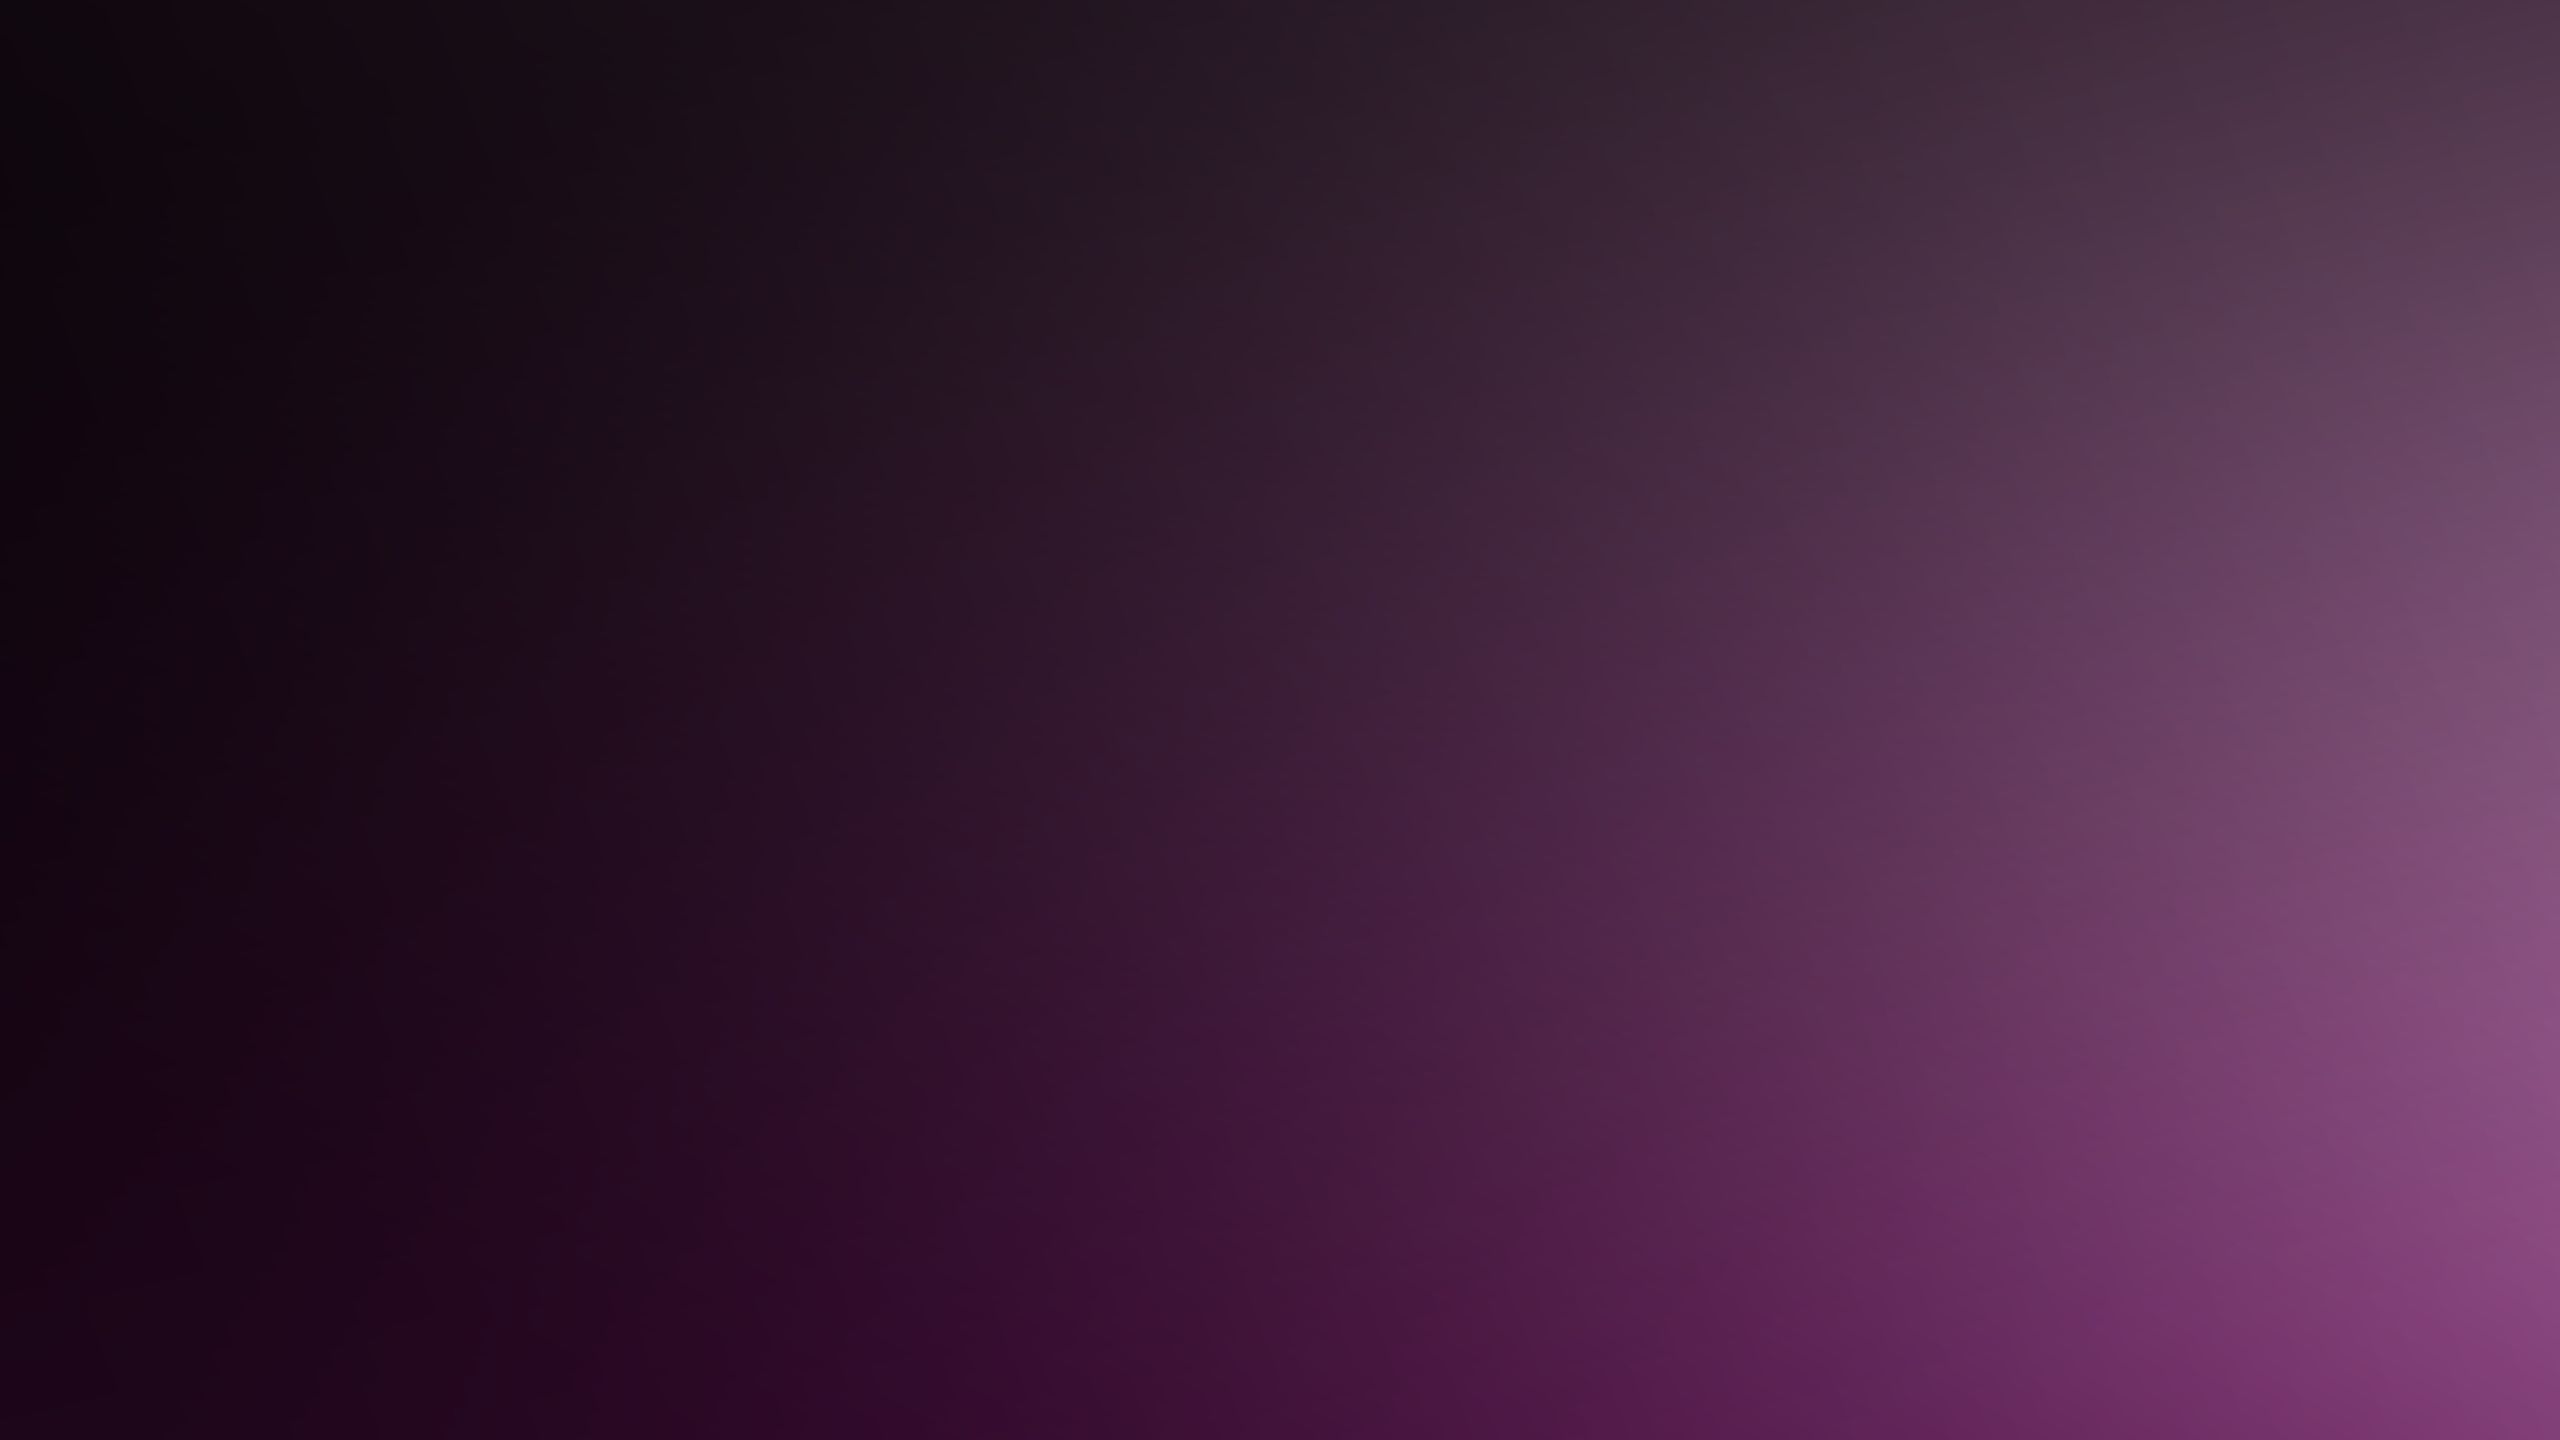 Download Wallpaper 2560x1440 Purple, Dark, Shadow, Color Mac iMac